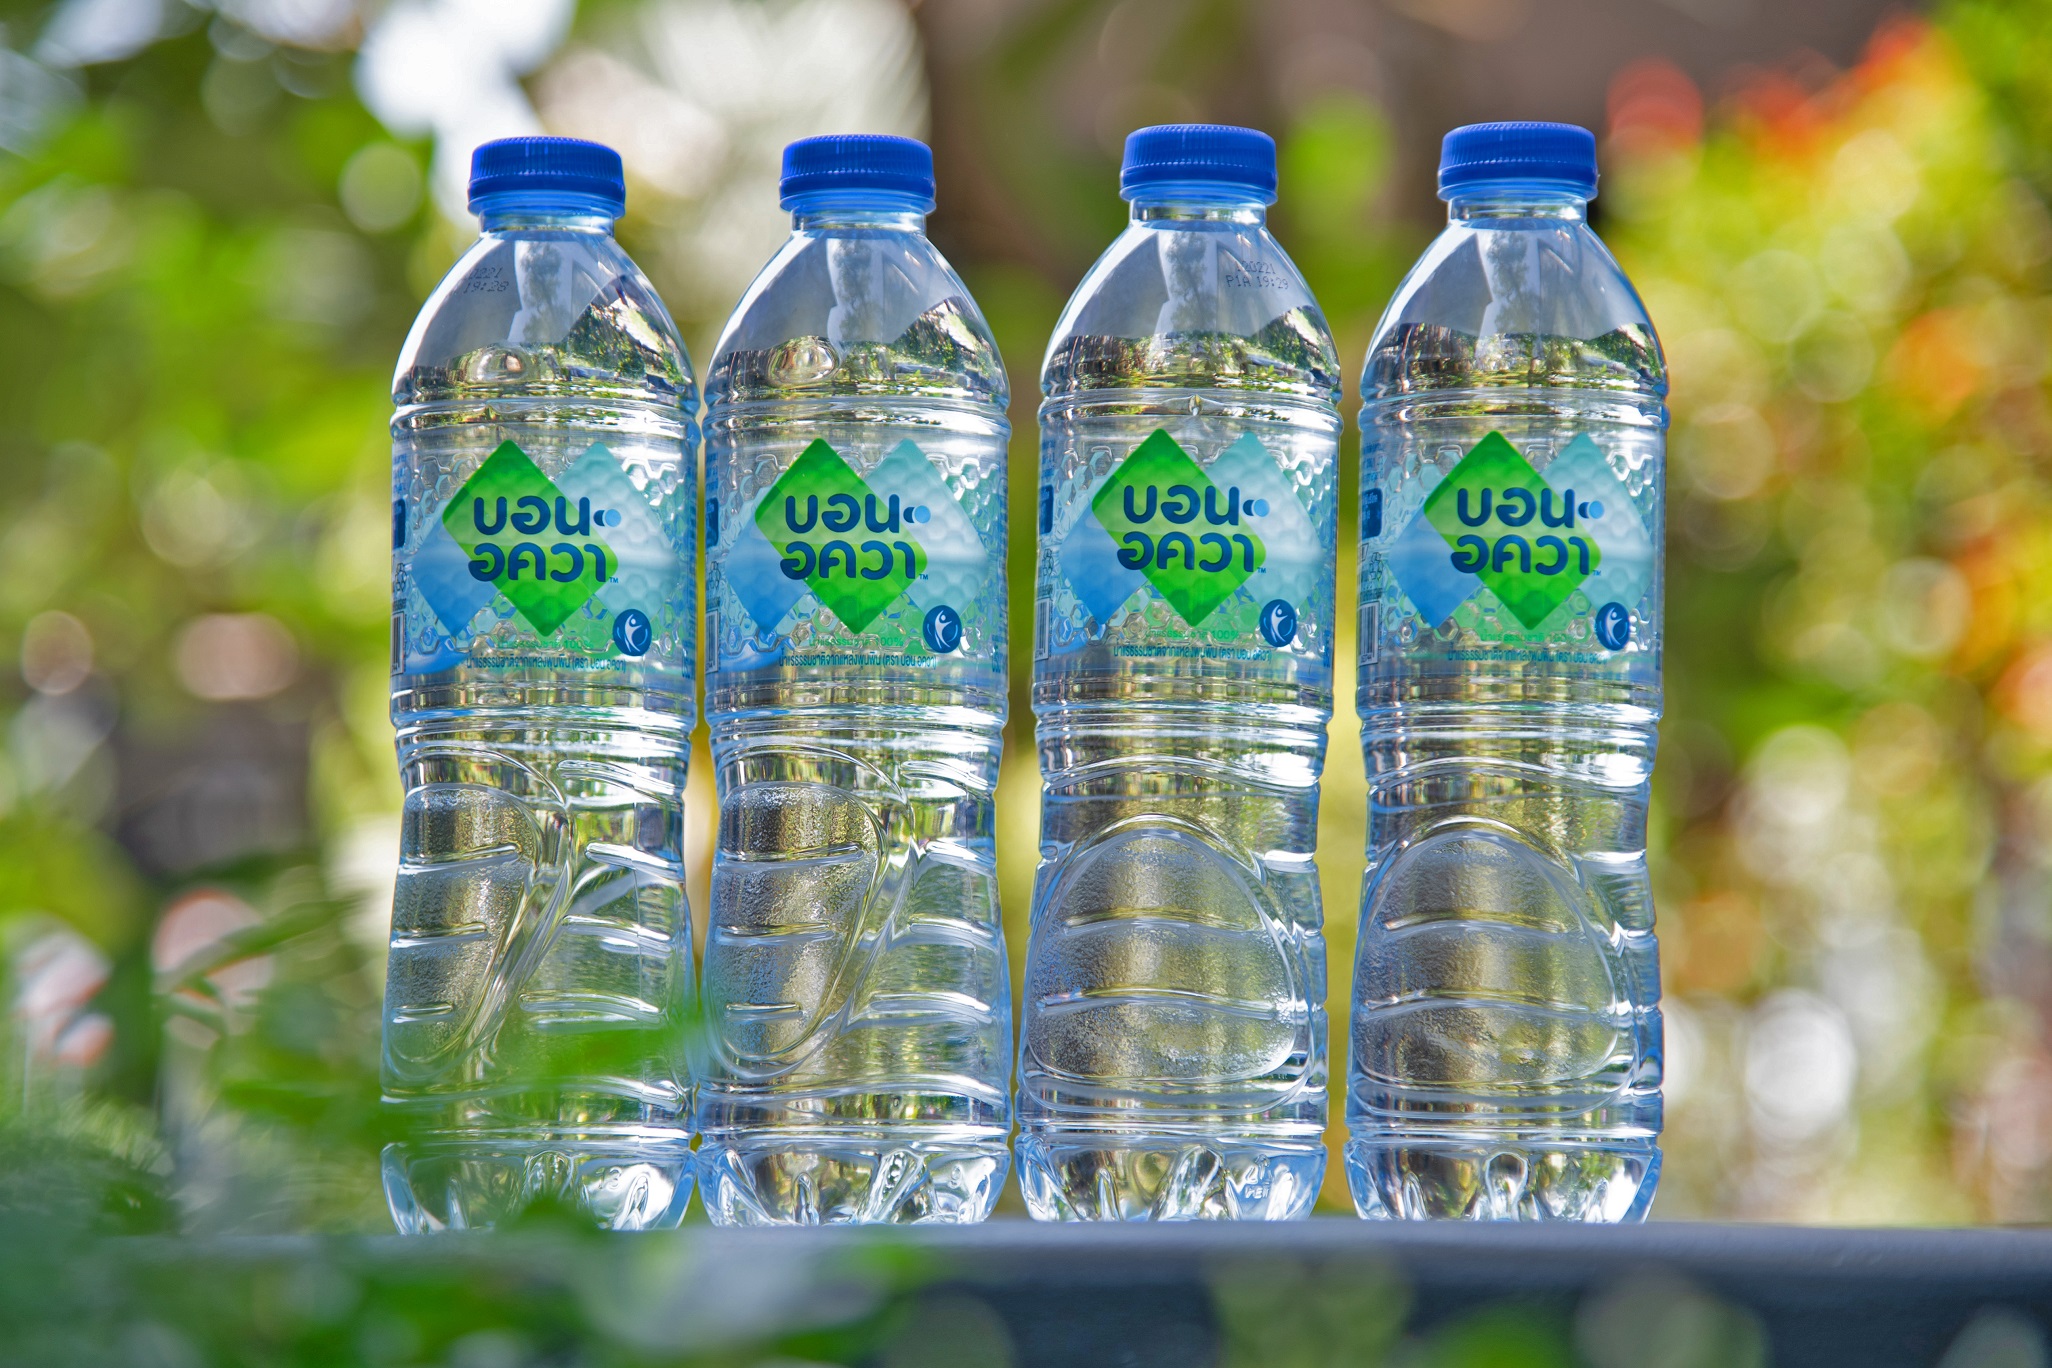 หาดทิพย์และโคคา-โคล่า เปิดตัวผลิตภัณฑ์น้ำแร่แบรนด์ระดับโลก บอน อควา เดินหน้ารุกเซ็กเมนต์น้ำแร่ธรรมชาติเต็มกำลัง